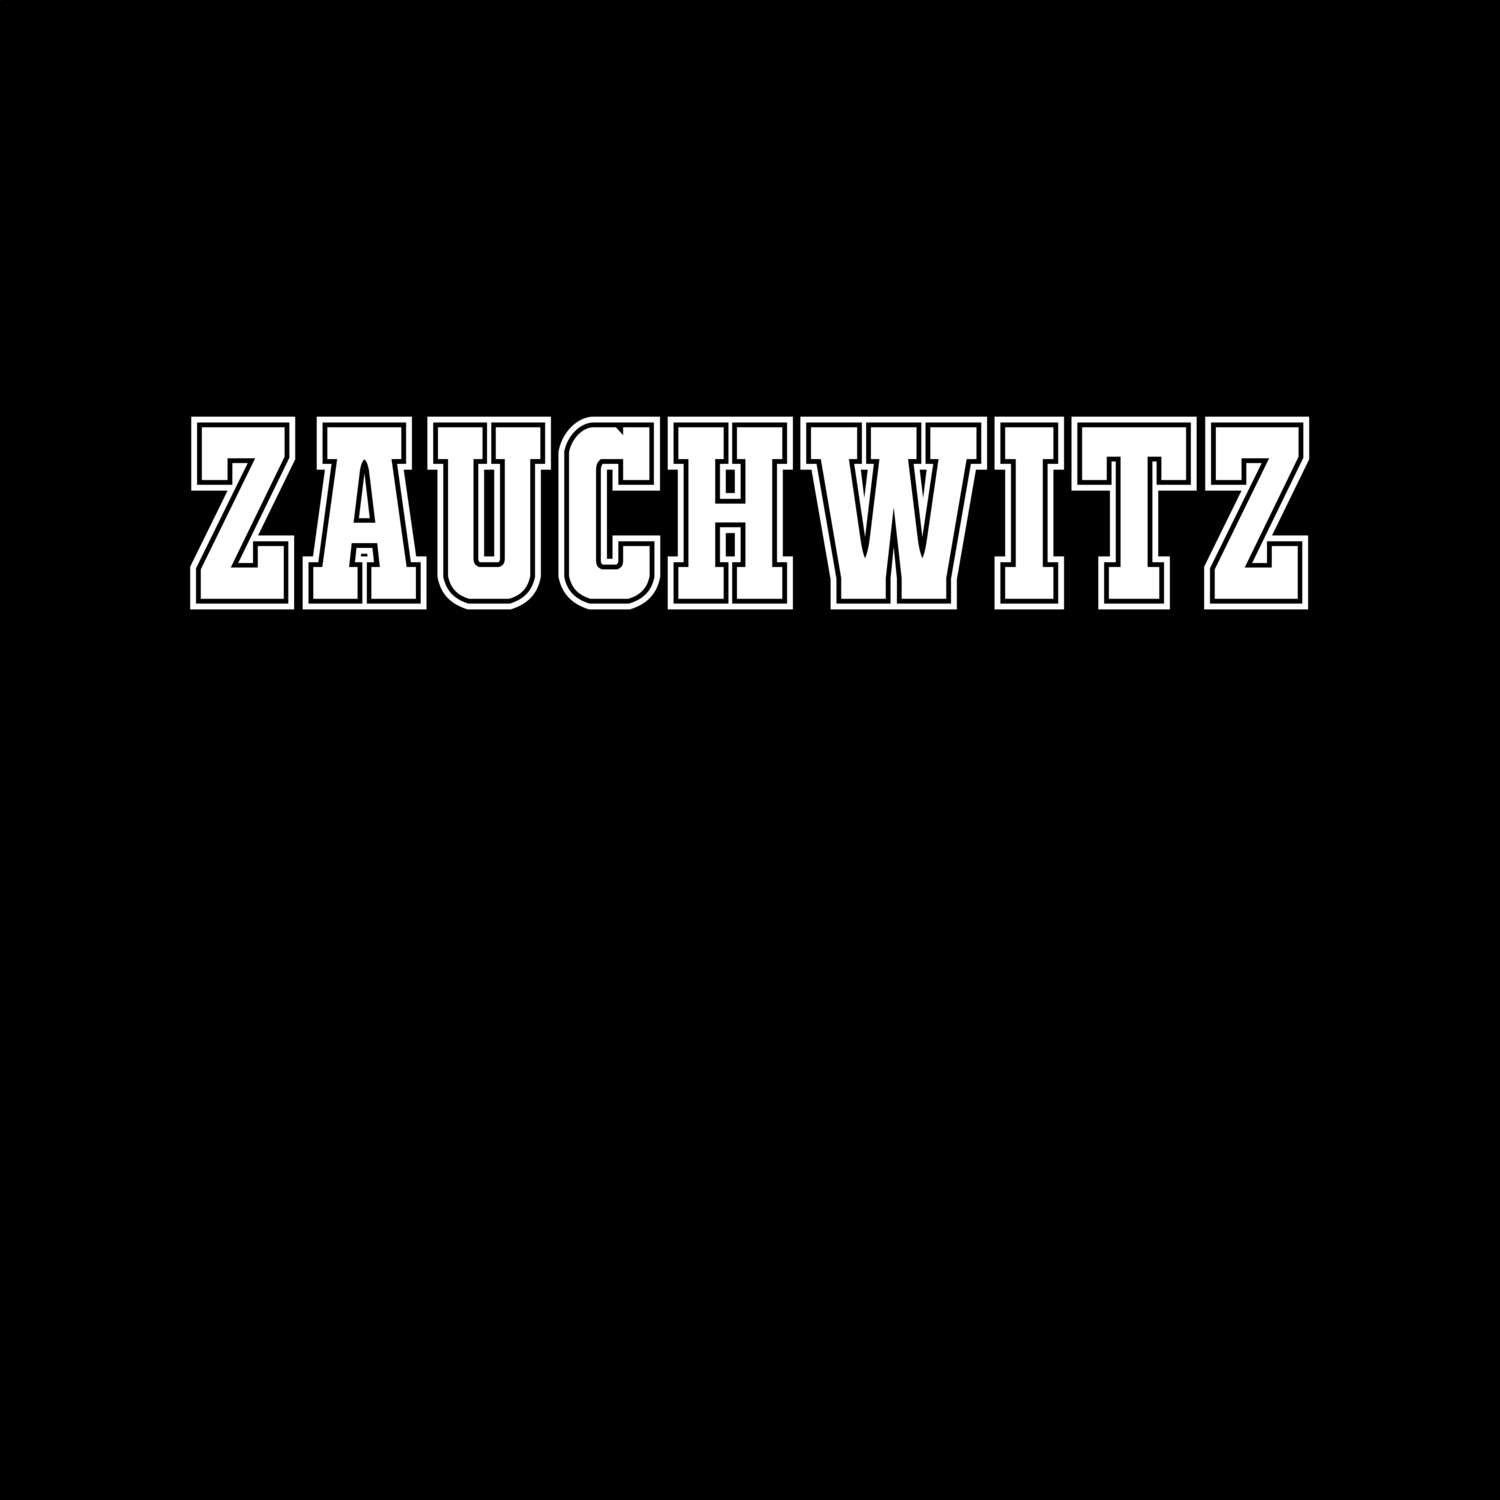 Zauchwitz T-Shirt »Classic«